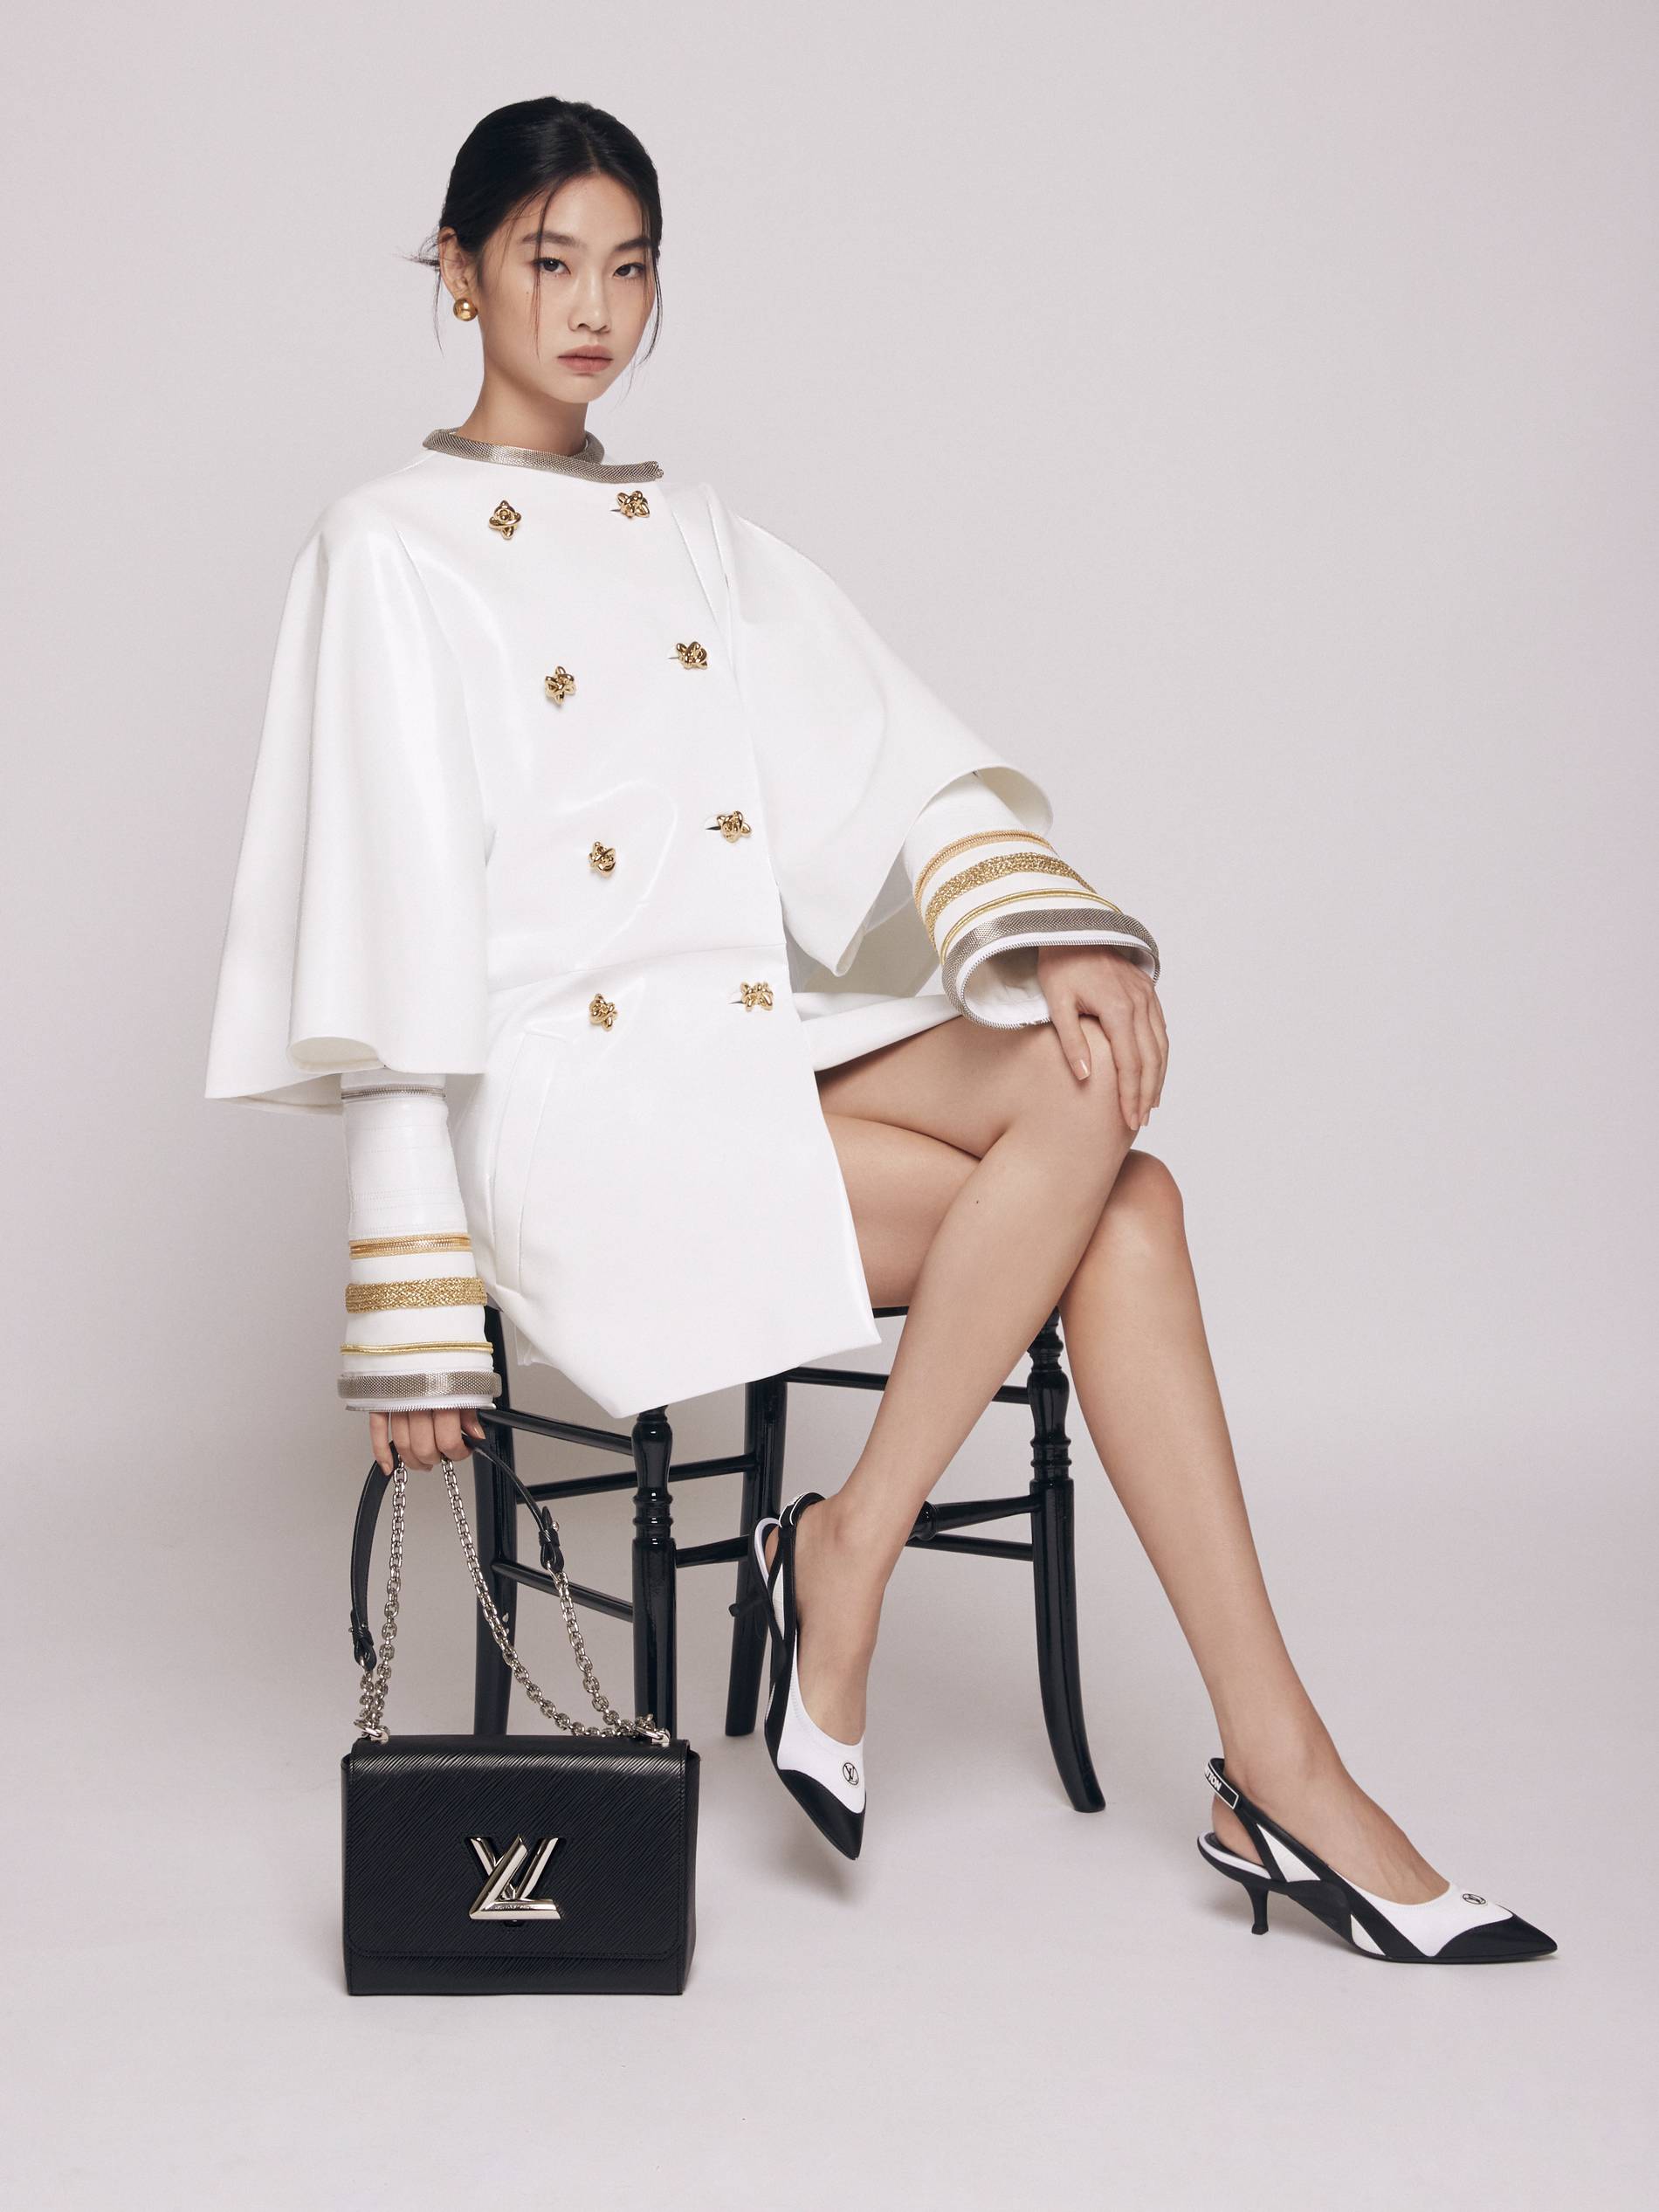 Jung Ho Yeon mang phong thái người mẫu rất rõ nét (ảnh: Internet)